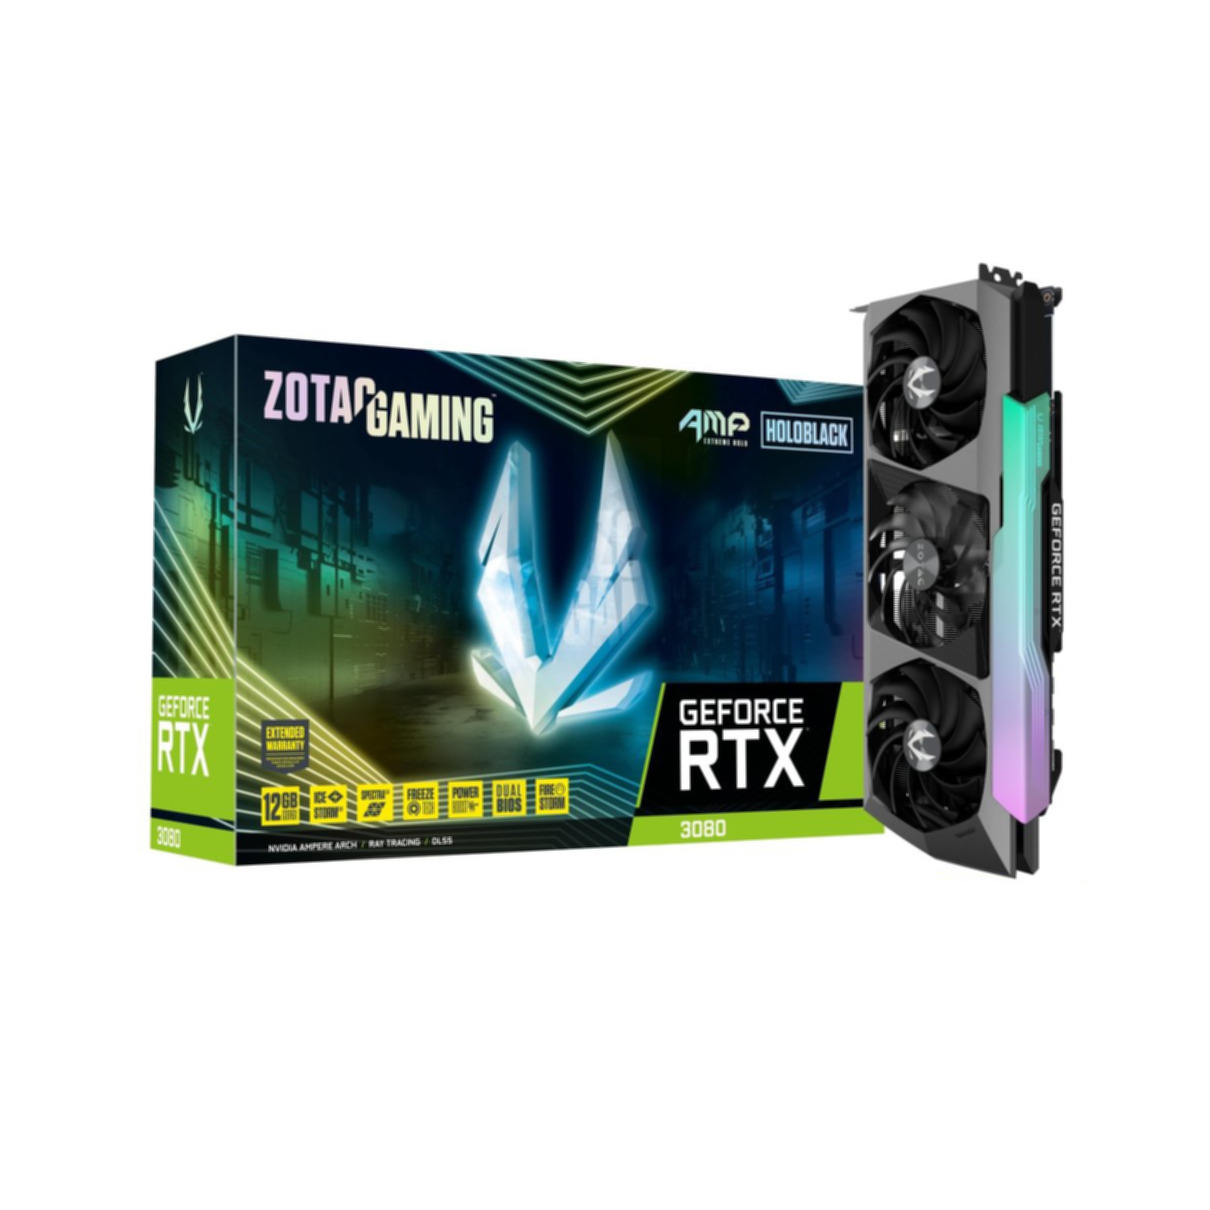 ZOTAC GAMING GeForce RTX 3080 AMP (NVIDIA, Extreme Grafikkarte) LHR Holo 12GB